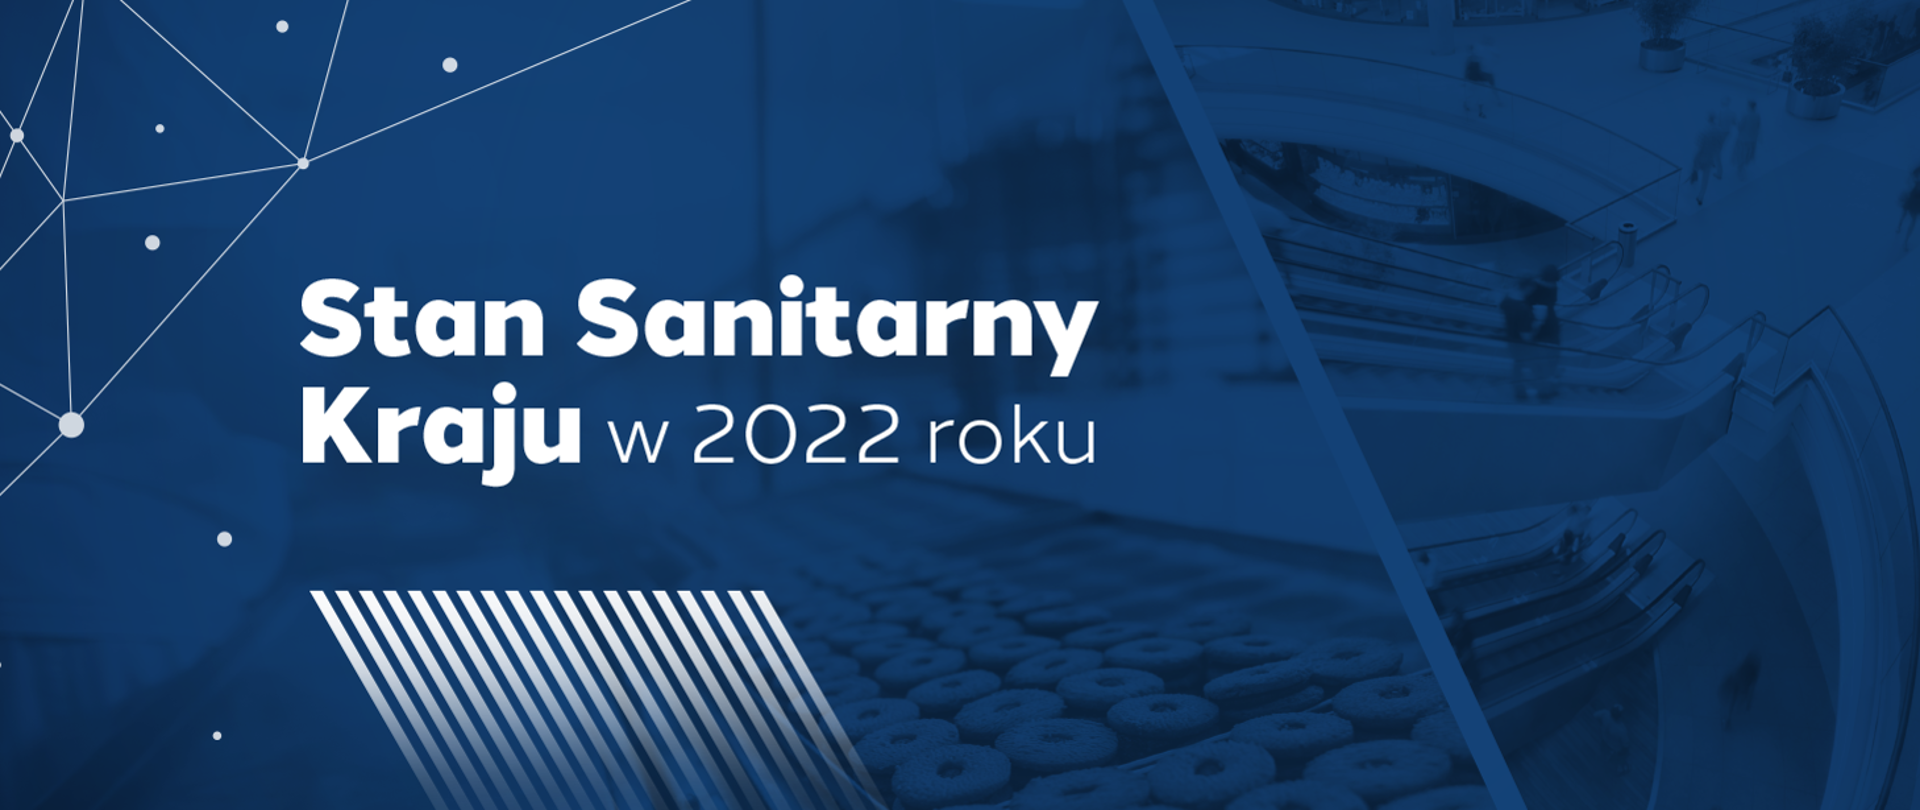 Stan Sanitarny w Kraju 2022